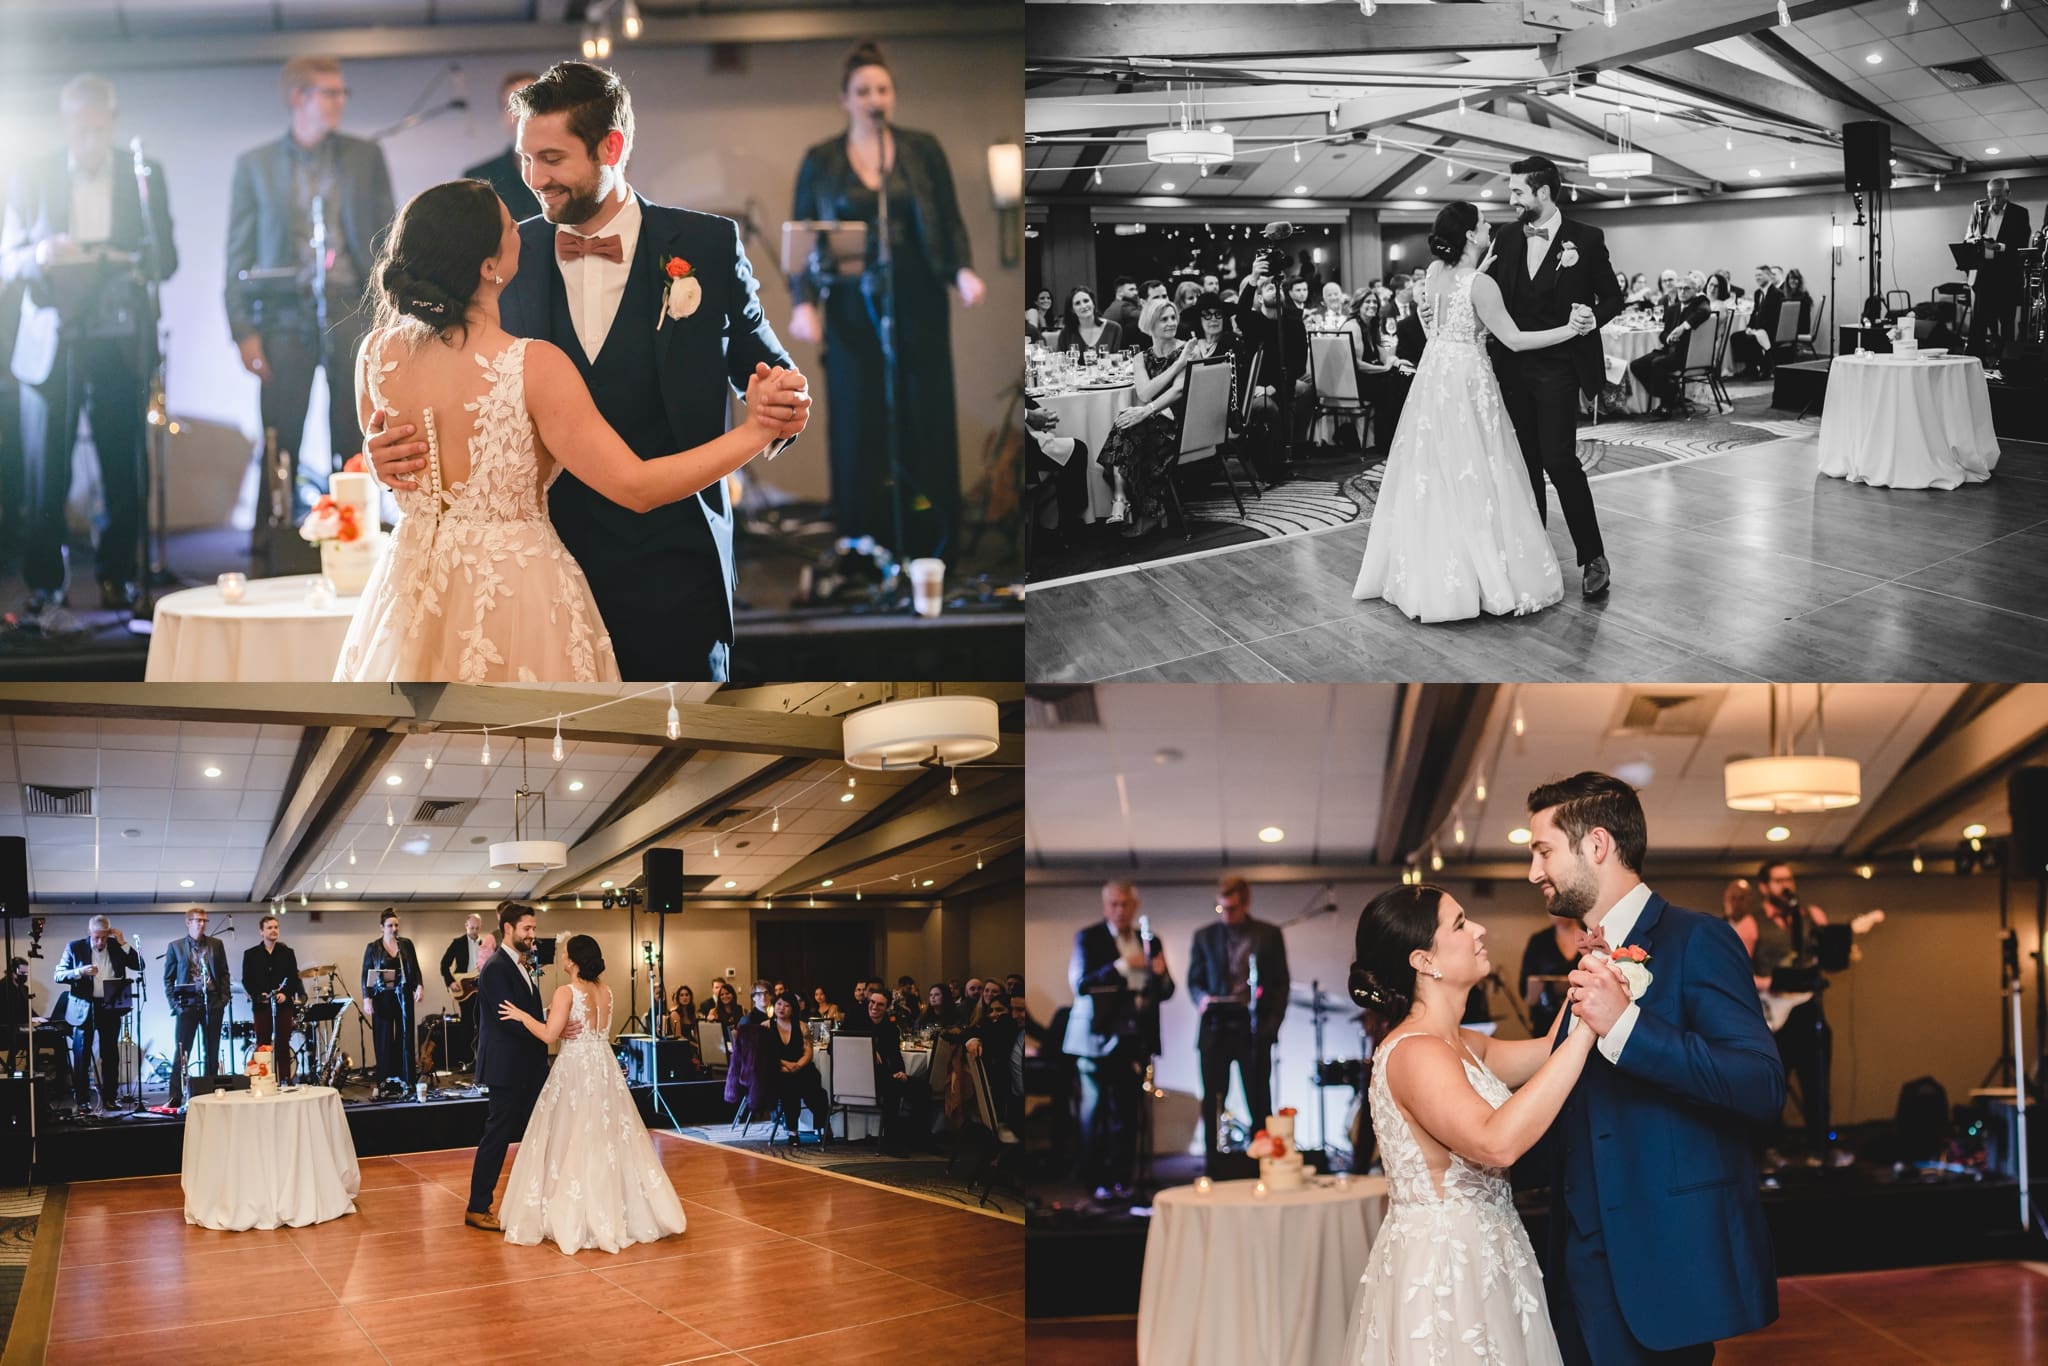 dancing photos for wedding reception